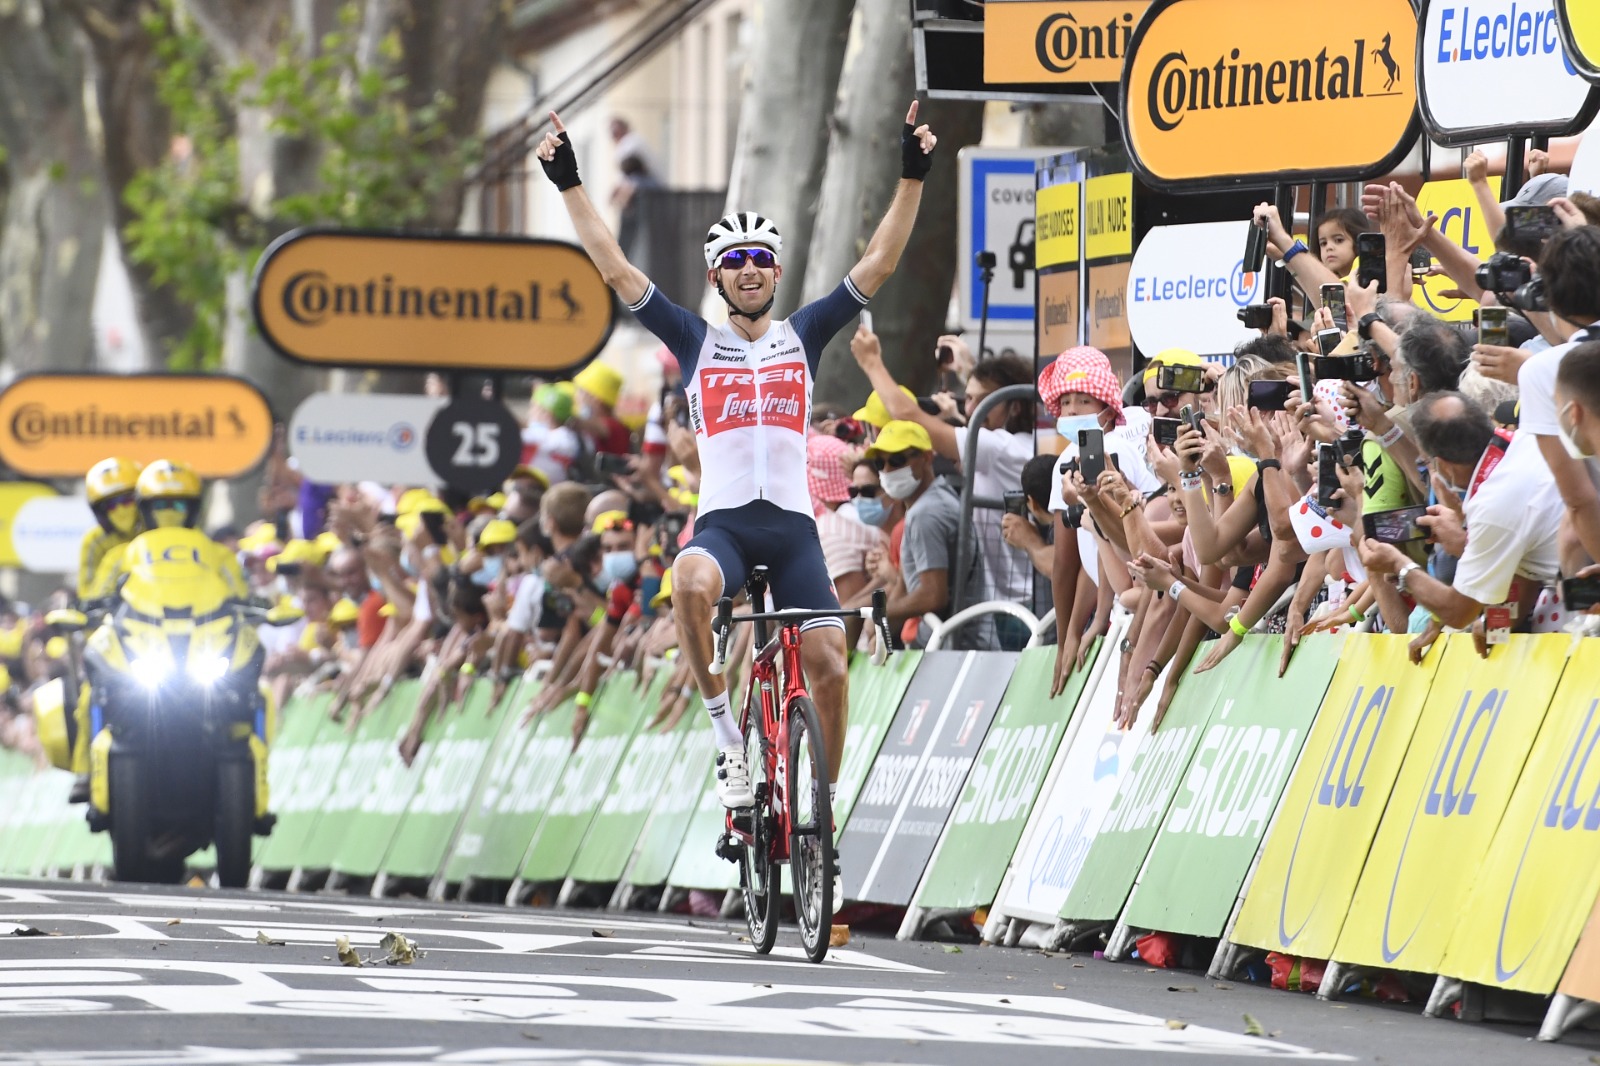 Tour de France 2021: etap 14. Bauke Mollema bezbłędnie z ucieczki